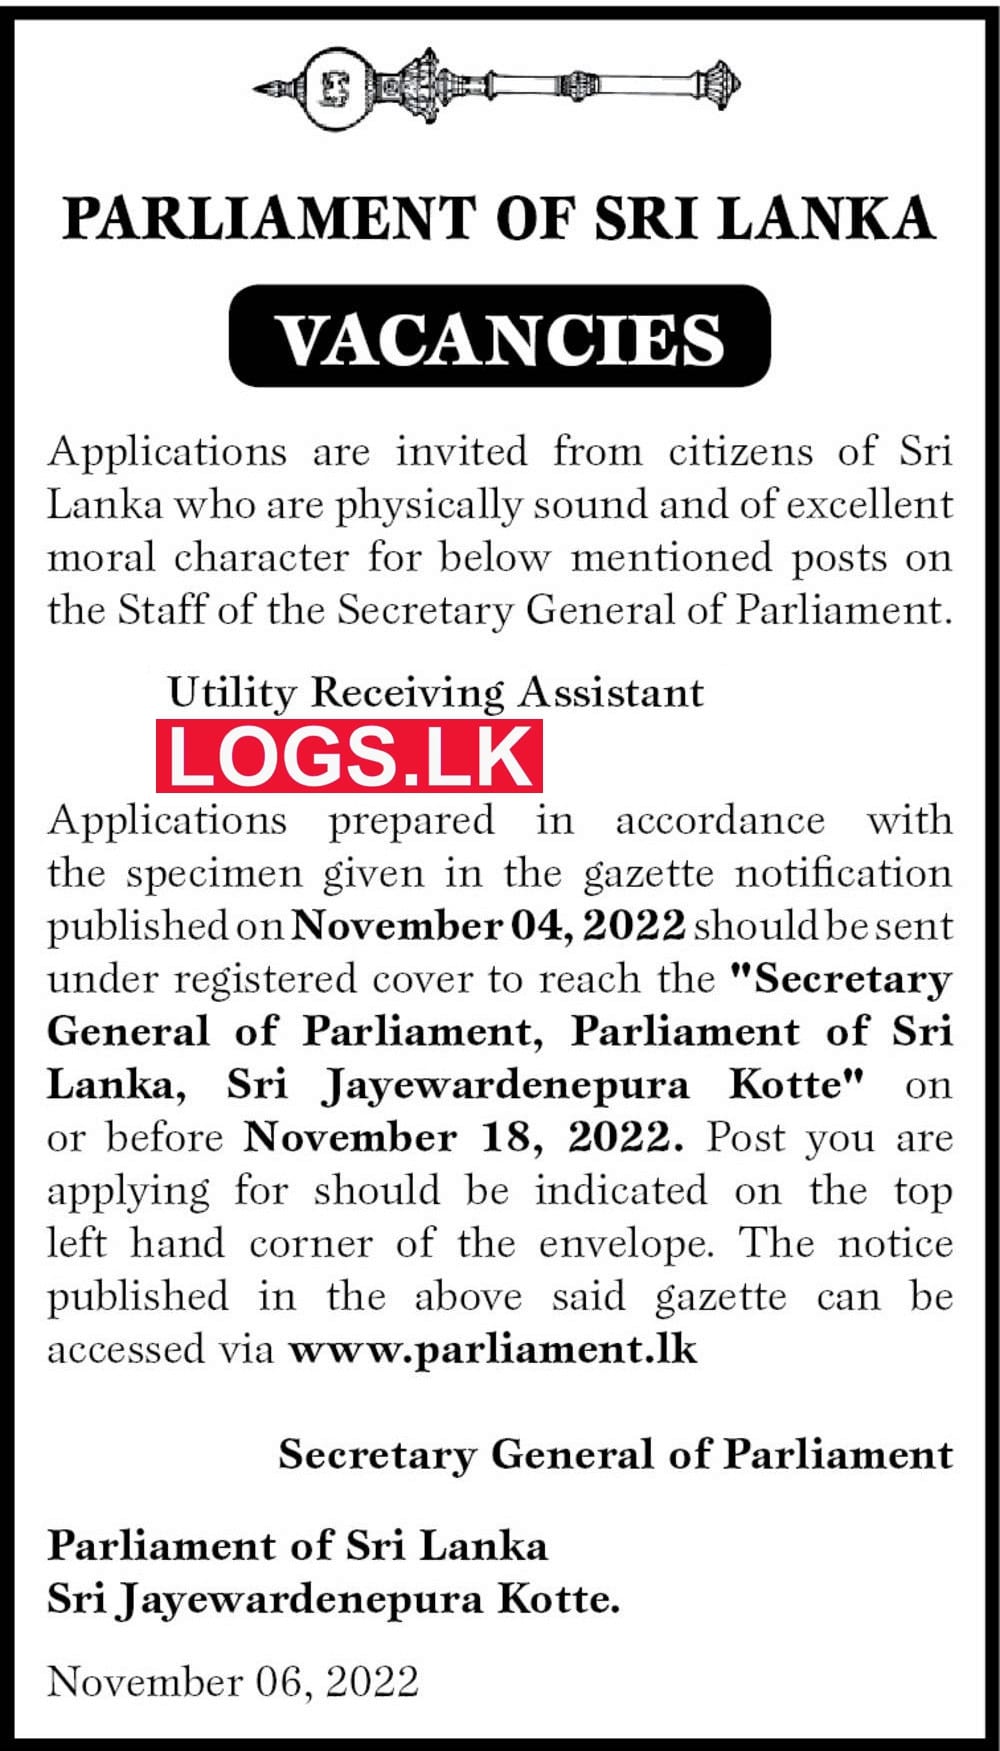 Utility Receiving Assistant Job Vacancy in Sri Lanka Parliament Jobs Vacancies